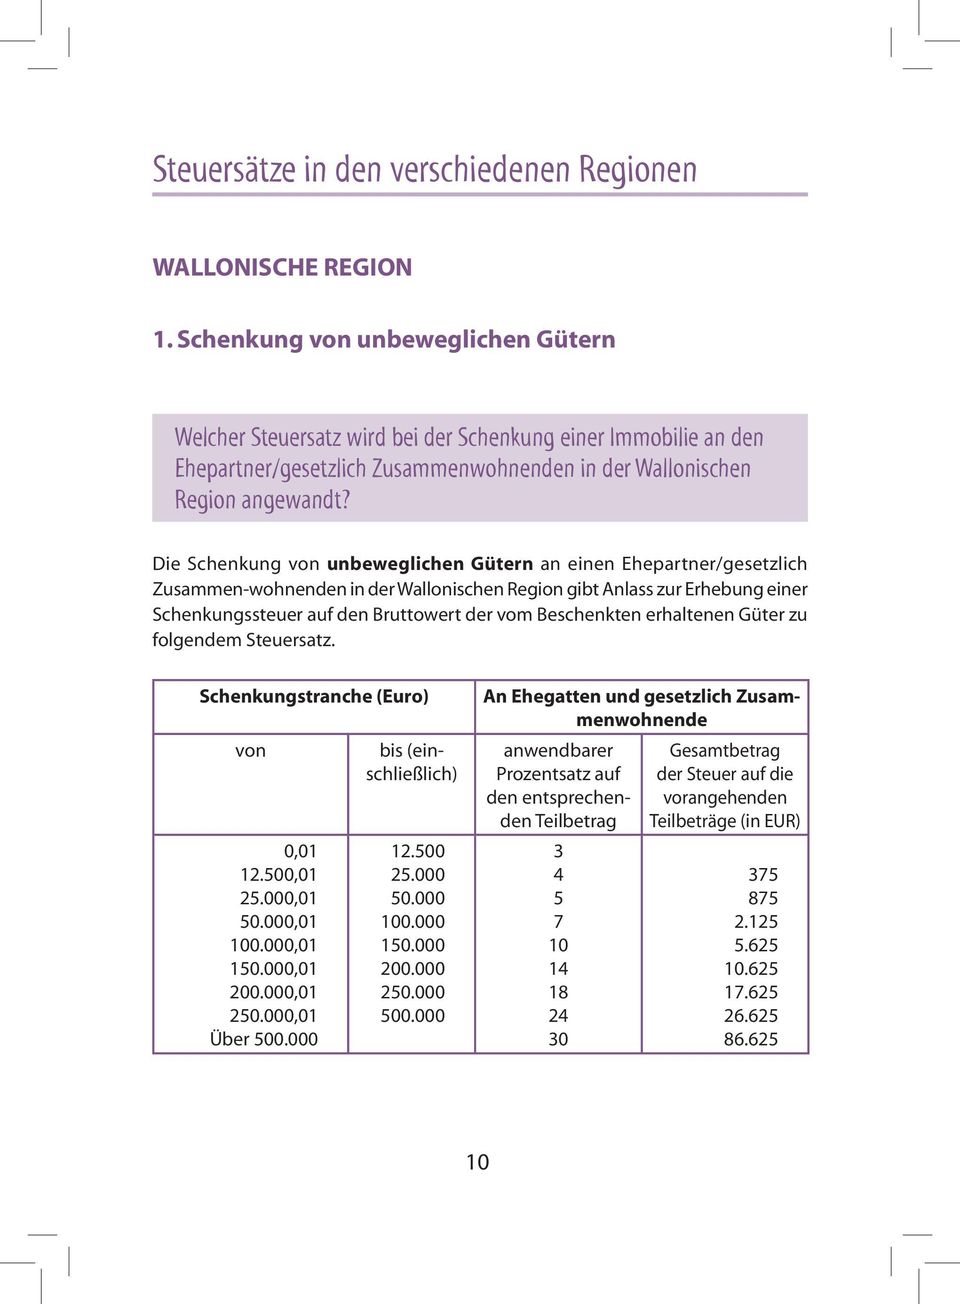 Die Schenkung von unbeweglichen Gütern an einen Ehepartner/gesetzlich Zusammen-wohnenden in der Wallonischen Region gibt Anlass zur Erhebung einer Schenkungssteuer auf den Bruttowert der vom